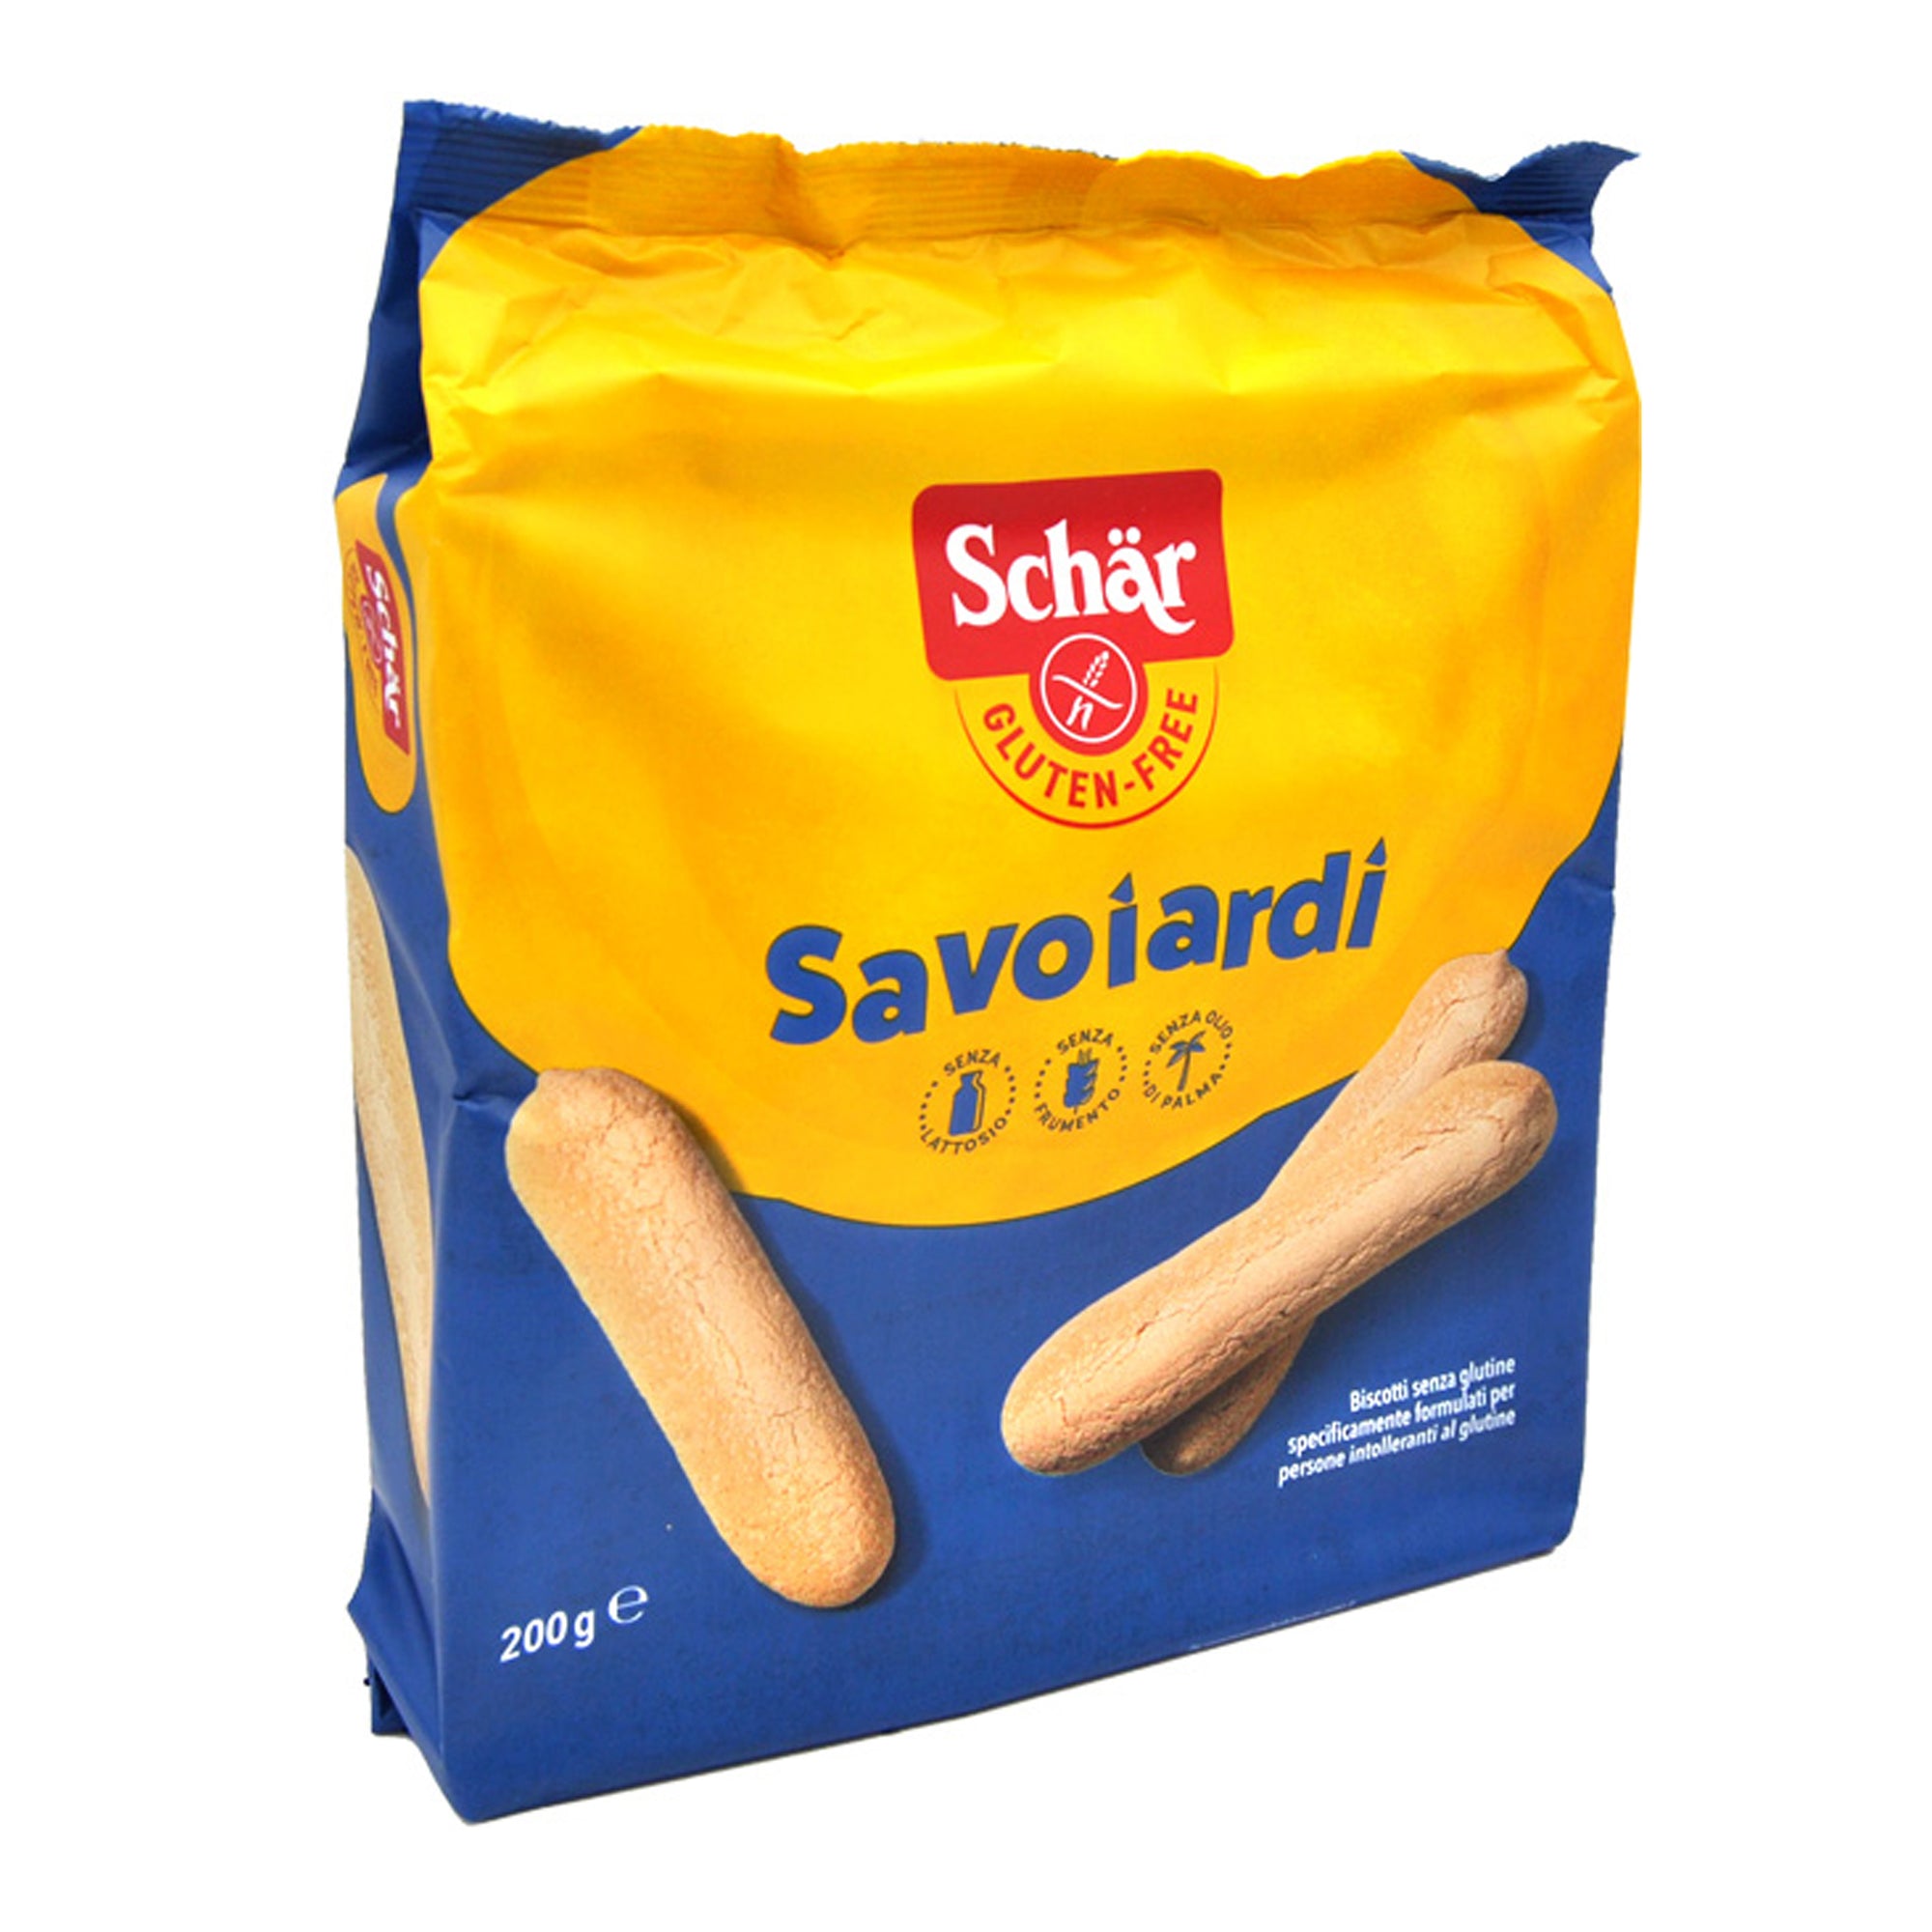 Schar Savoiardi - Sponge Finger Biscuits 200g